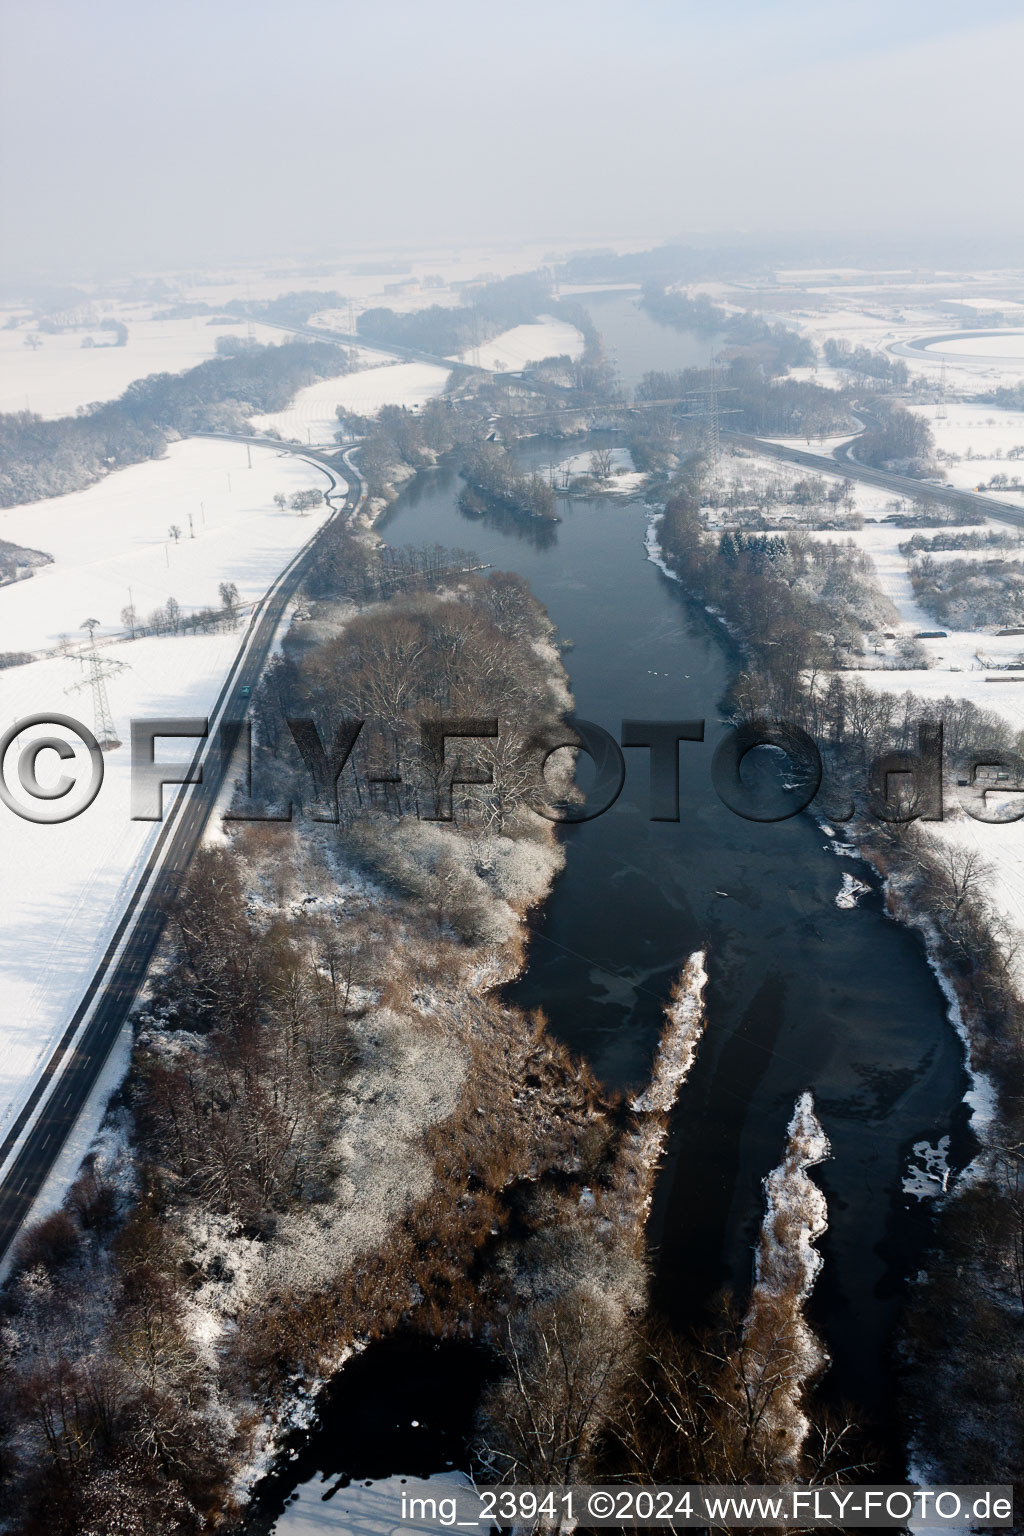 Luftbild von Altrhein im Winter in Wörth am Rhein im Bundesland Rheinland-Pfalz, Deutschland